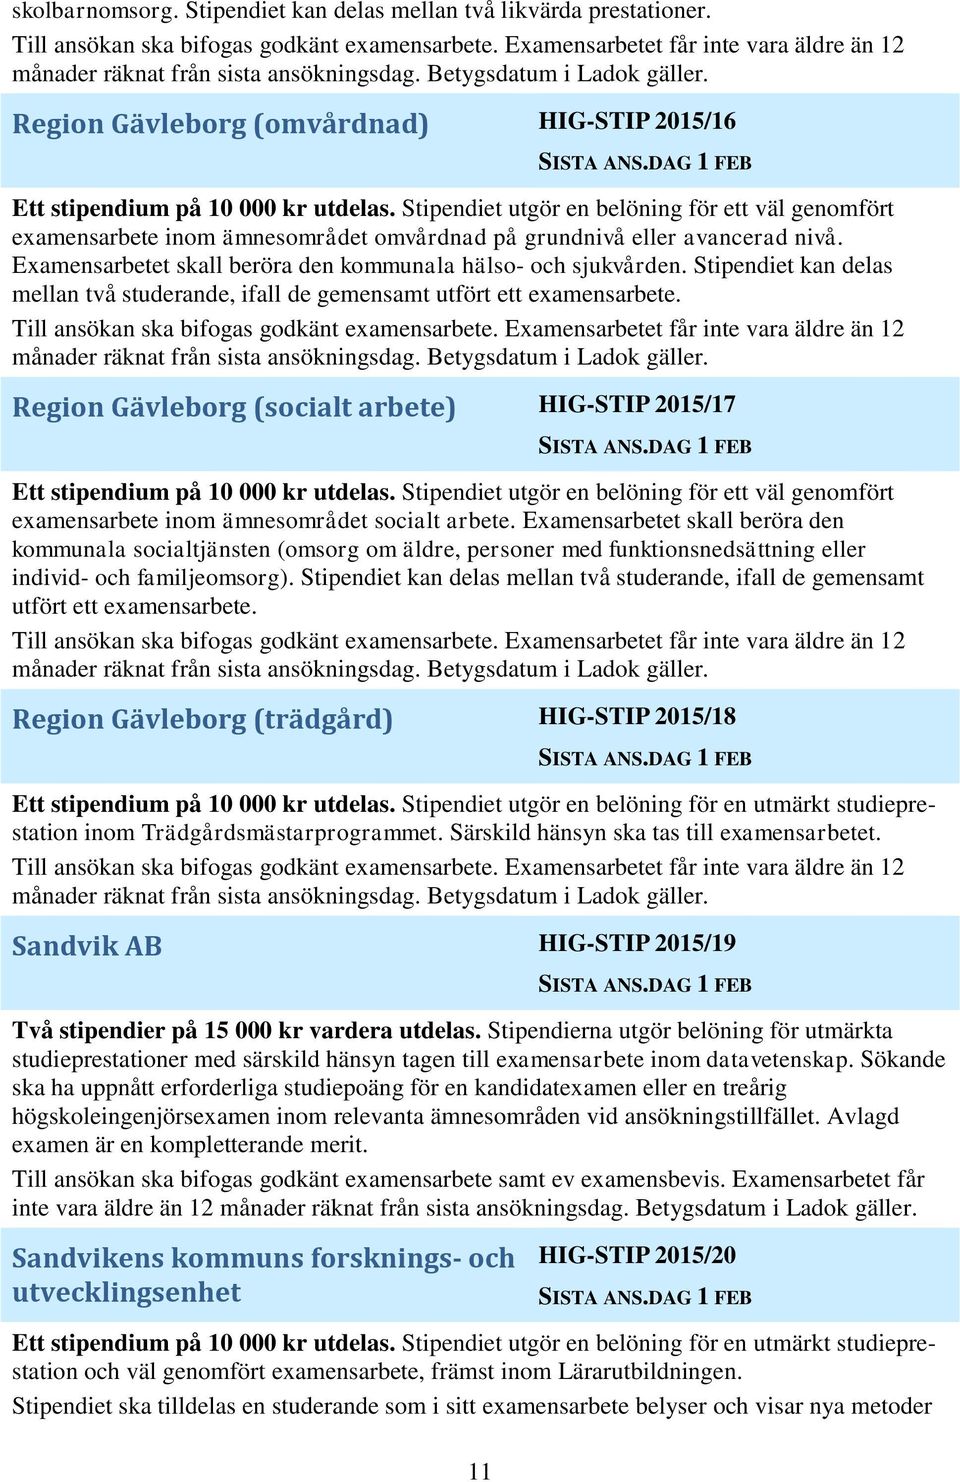 Stipendiet kan delas mellan två studerande, ifall de gemensamt utfört ett examensarbete. Region Gävleborg (socialt arbete) HIG-STIP 2015/17 Ett stipendium på 10 000 kr utdelas.